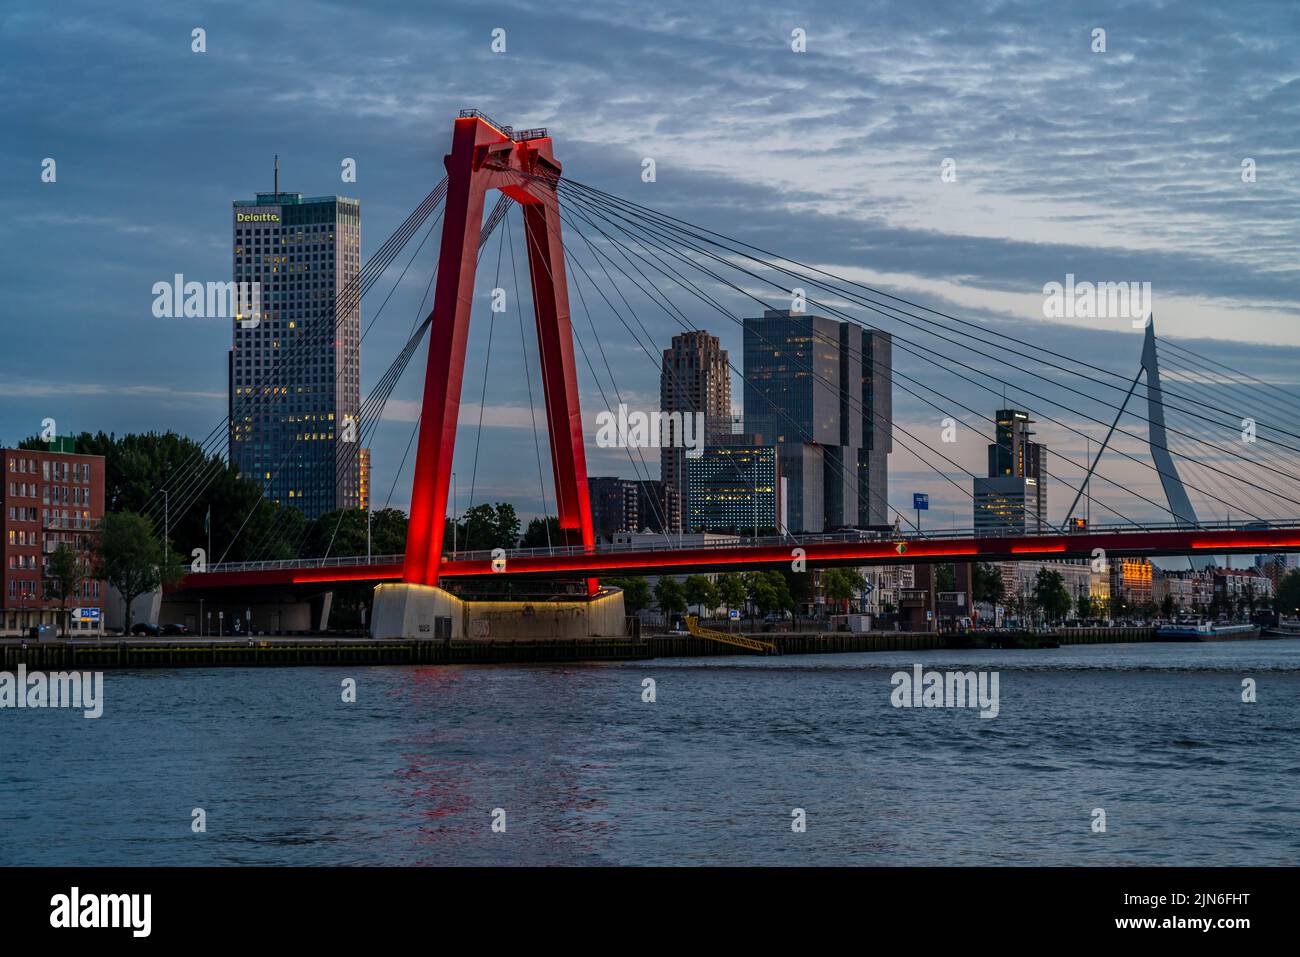 El horizonte de Rotterdam, en el Nieuwe Maas, río, rascacielos, edificios en la ciudad, Países Bajos, Willemsbrug, Erasmusbrug en la parte trasera, Foto de stock